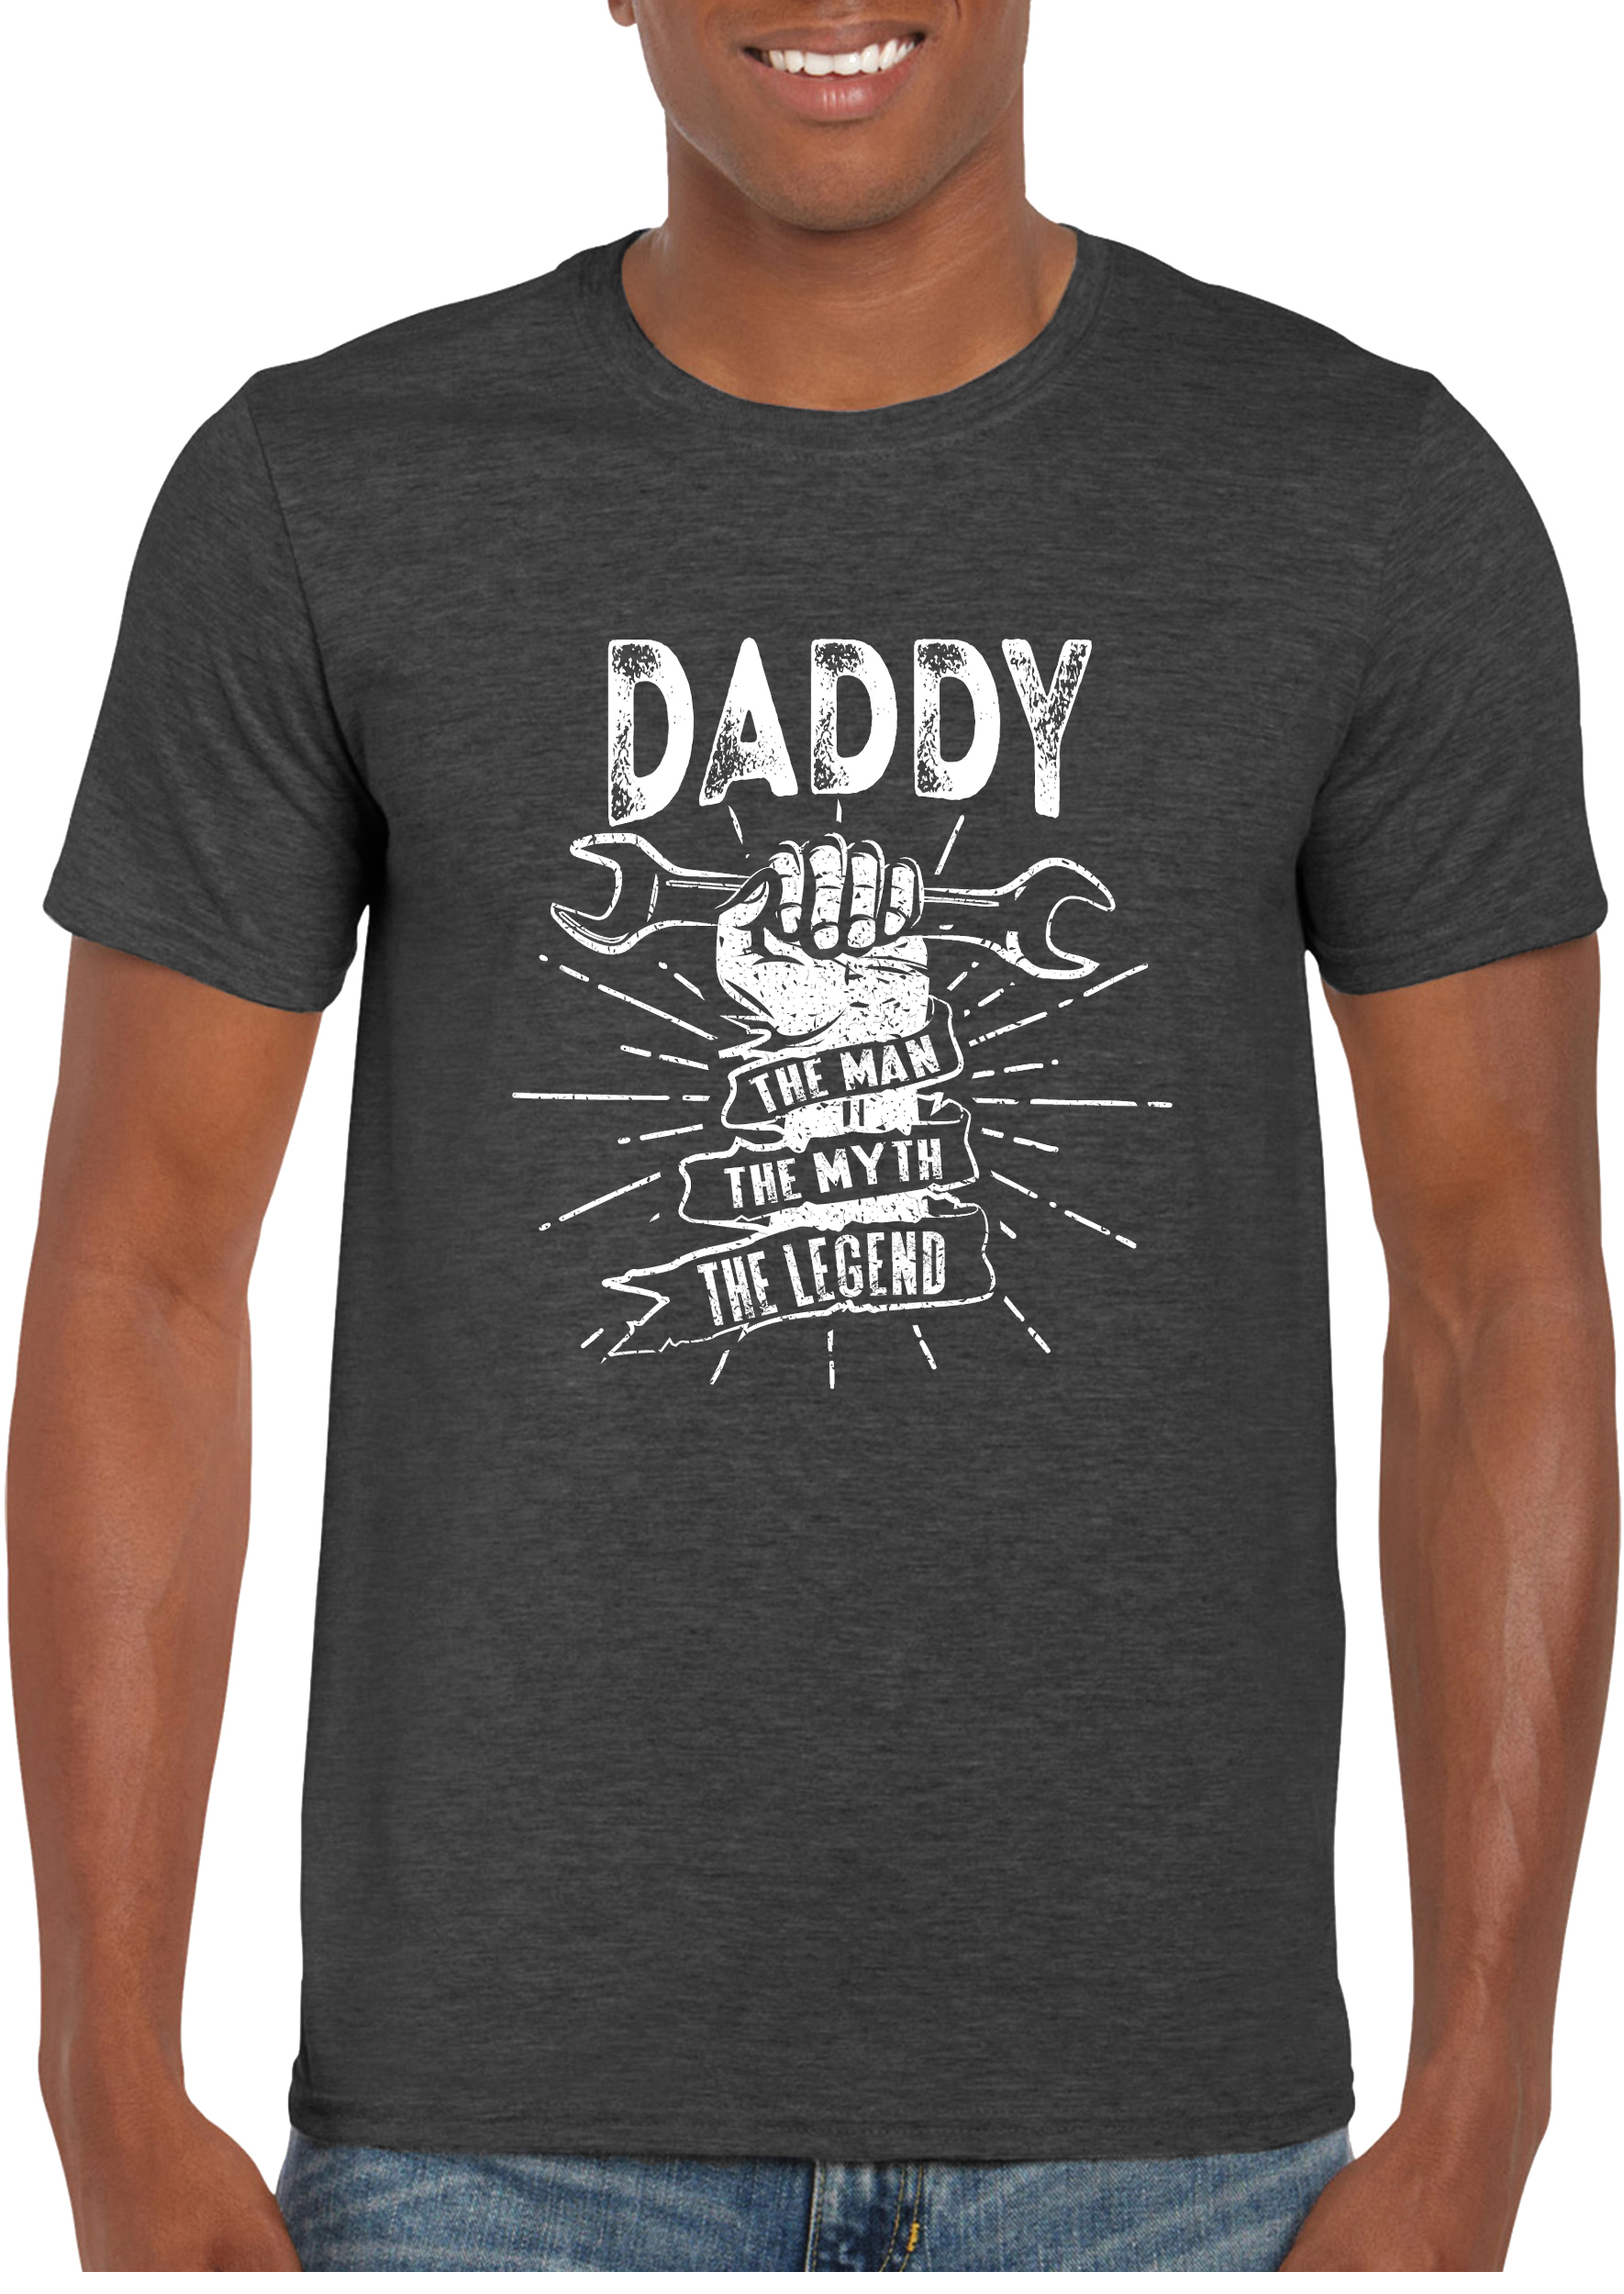 Texas Tees, Man Myth Legend Tshirt, Daddy Shirts for Men, Daddy, Man Myth Legend - Gray - image 1 of 2